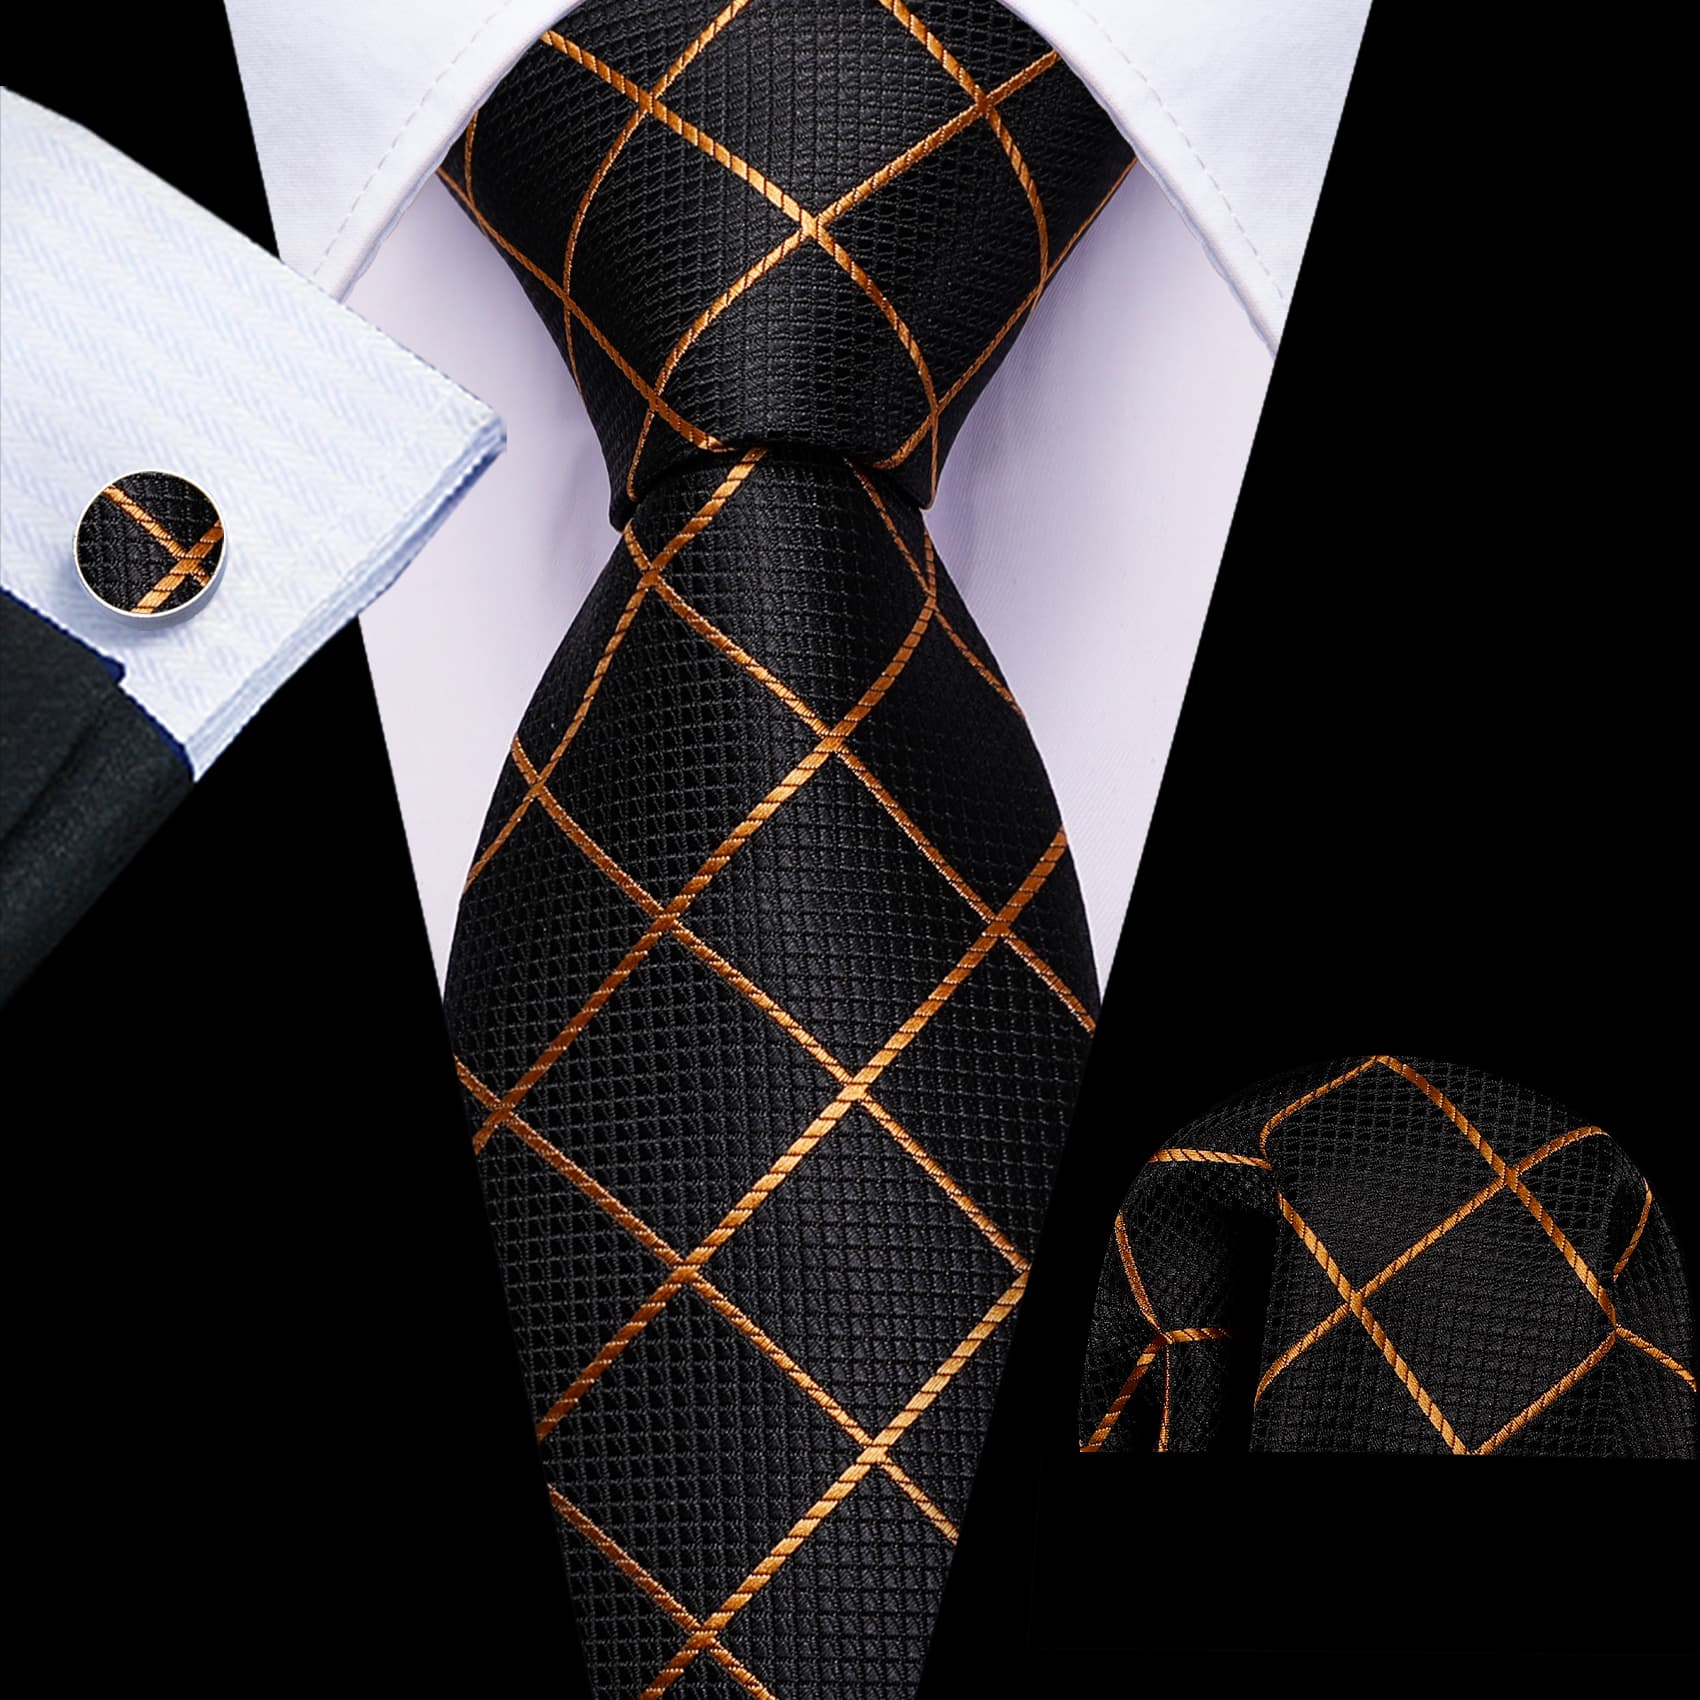 Black Tie Gold Lines Checkered Necktie Hanky Cufflinks Set